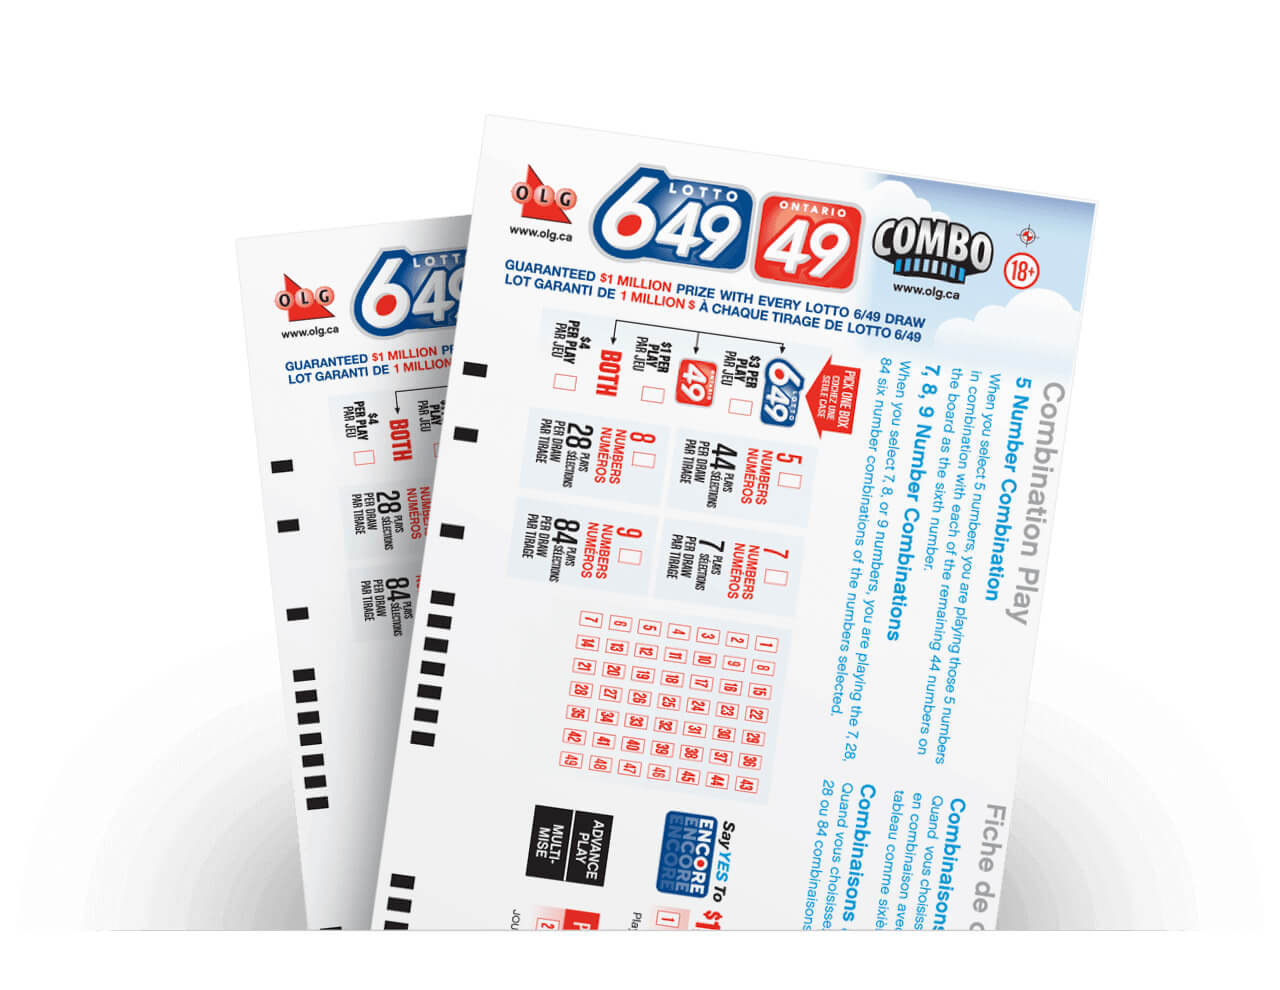 How do you play Ontario 49 combination?